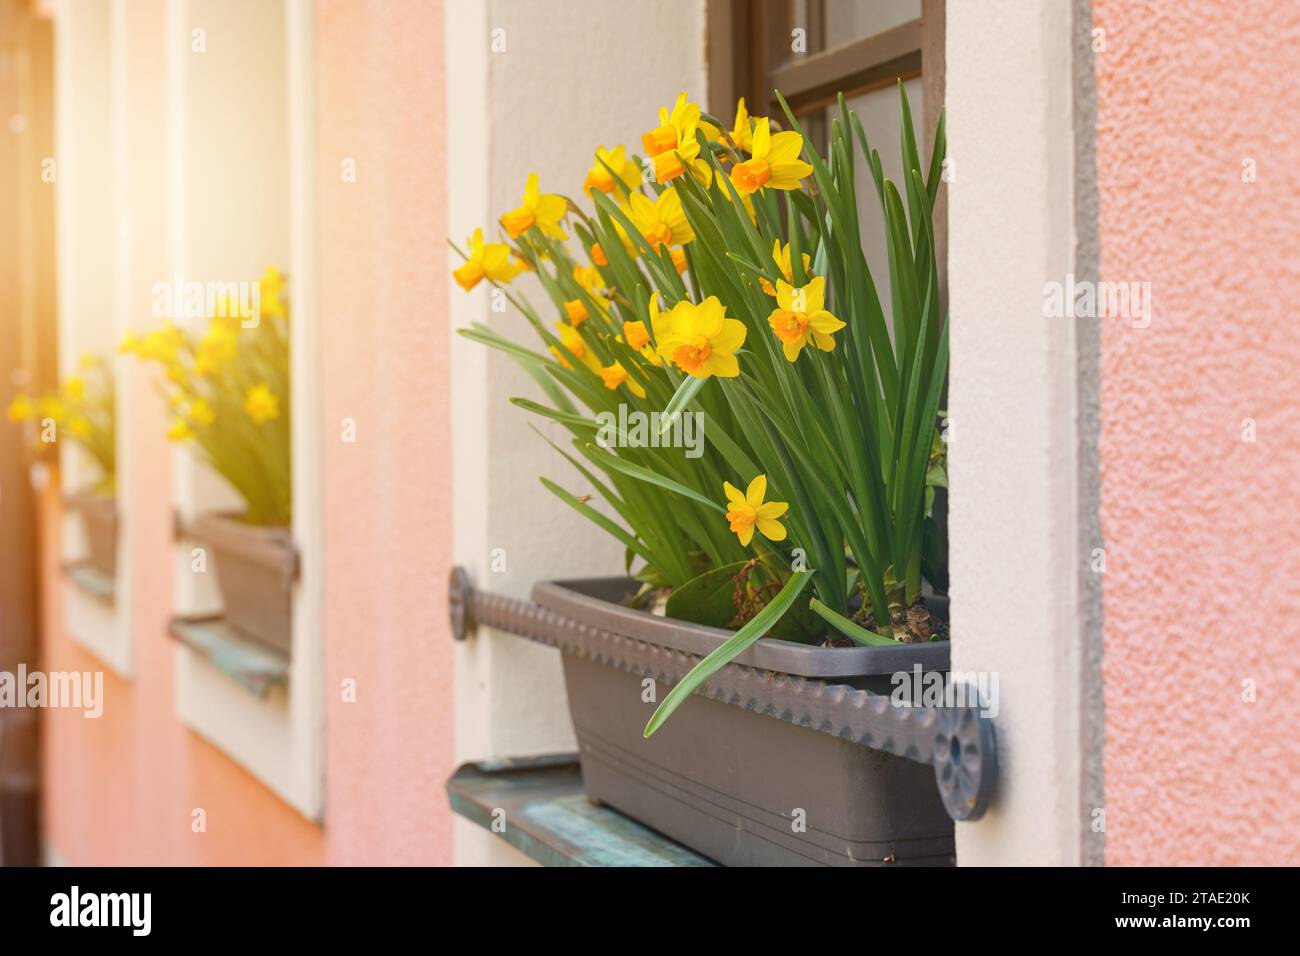 Blumenhintergrund. Am Fenster blüht ein Blumenbeet mit gelben Narzissen. Stockfoto